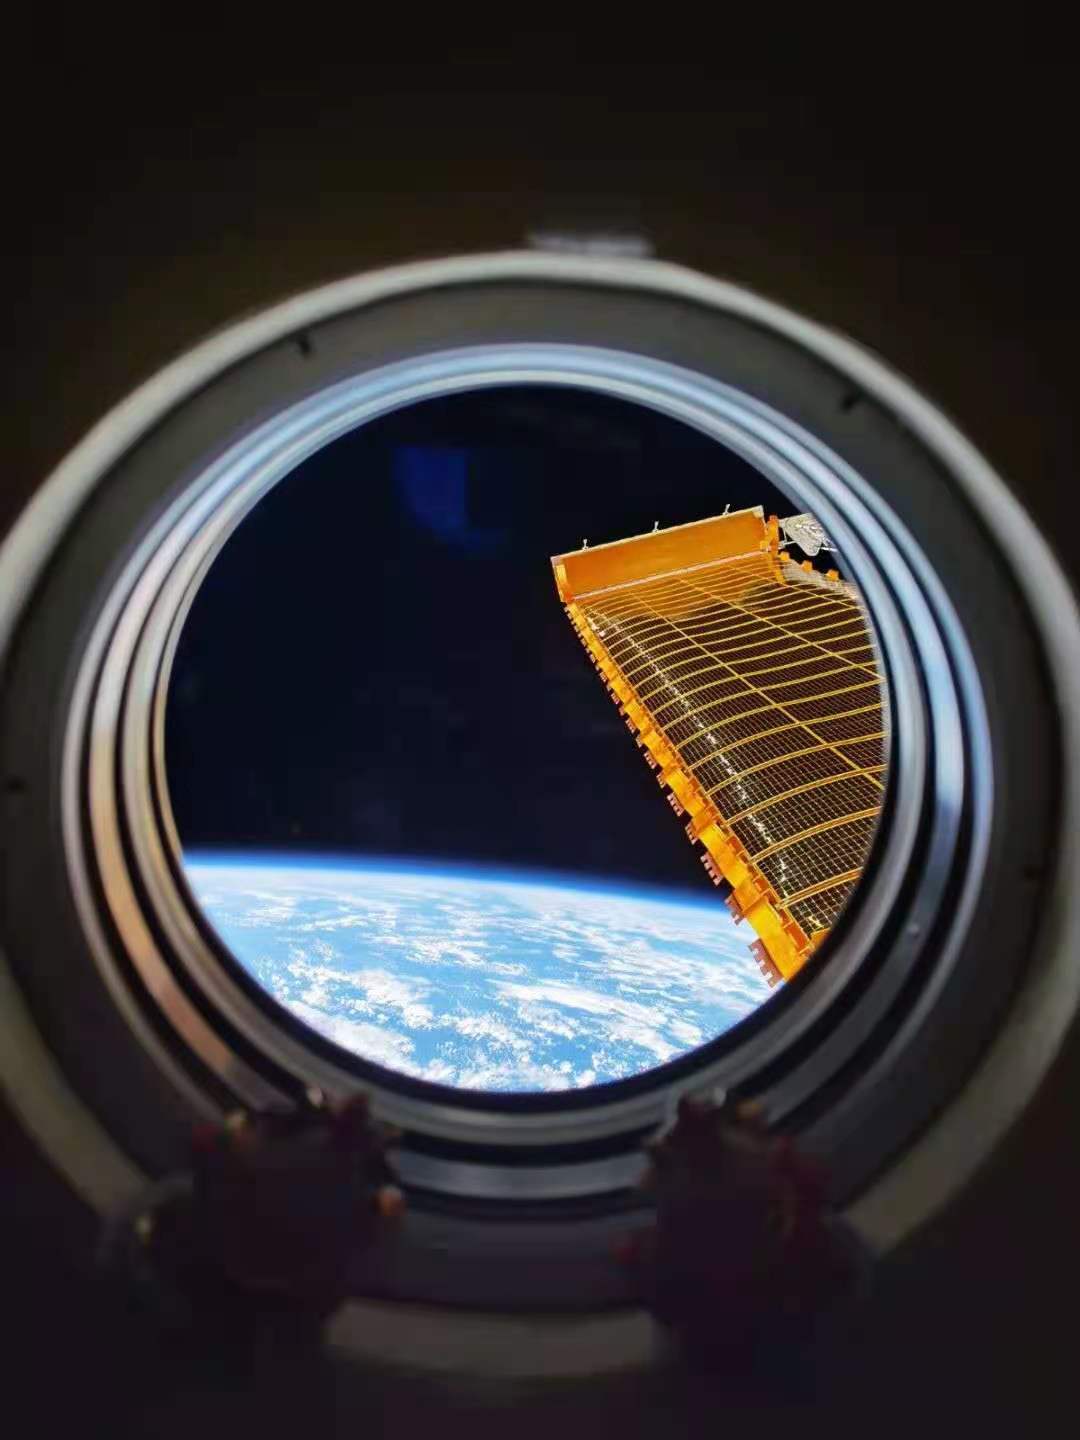 الكرة الأرضية الجميلة في عدسات رواد الفضاء من محطة الفضاء الصينية_fororder_webwxgetmsgimg (4)